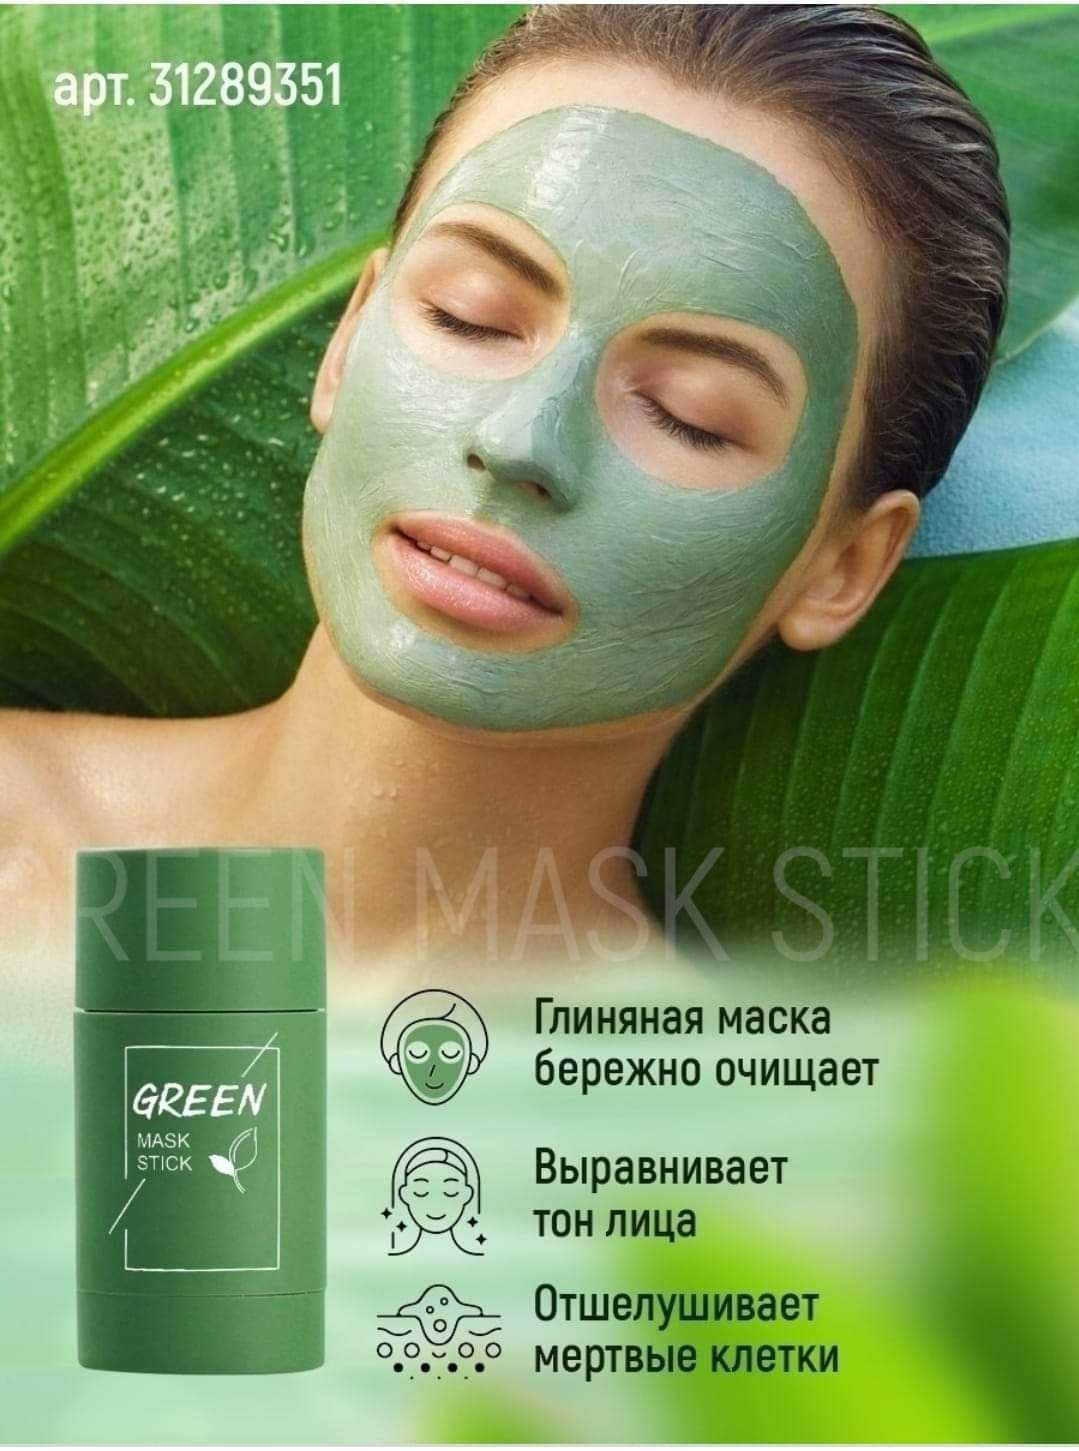 Maska do twarzy z zieloną herbatą.